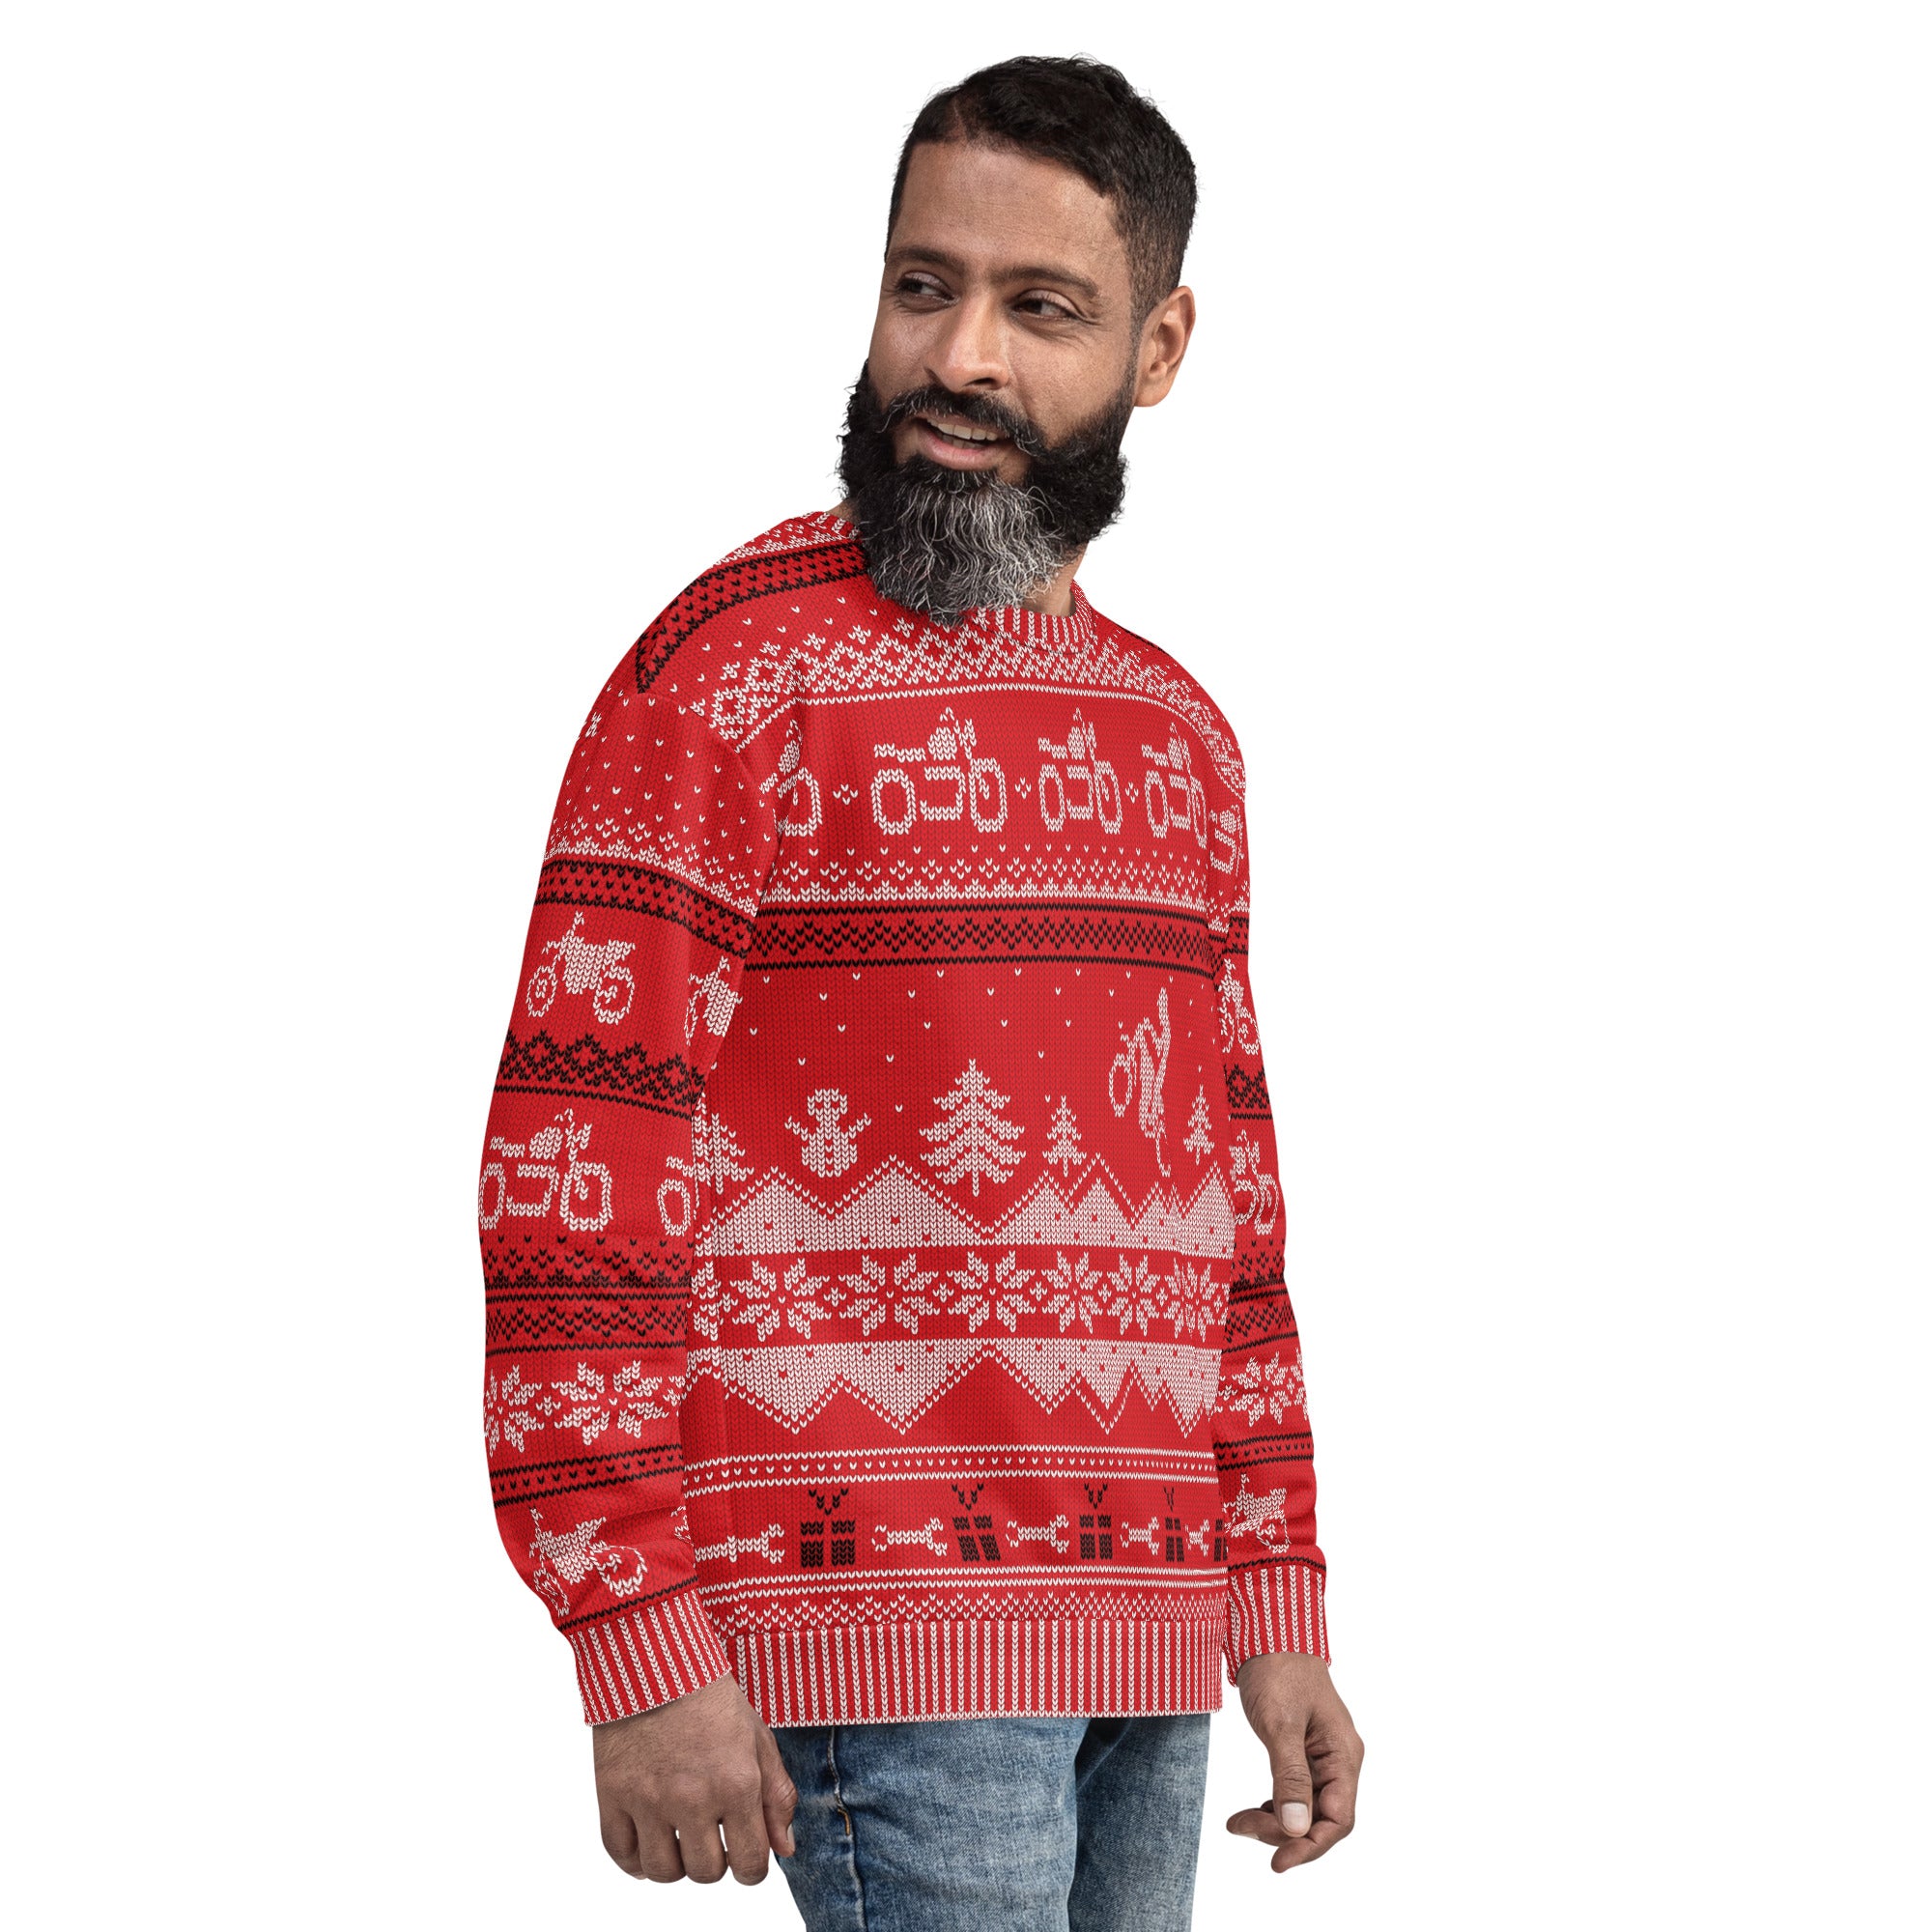 Merry Moto "Ugly" Christmas Sweatshirt (Red)